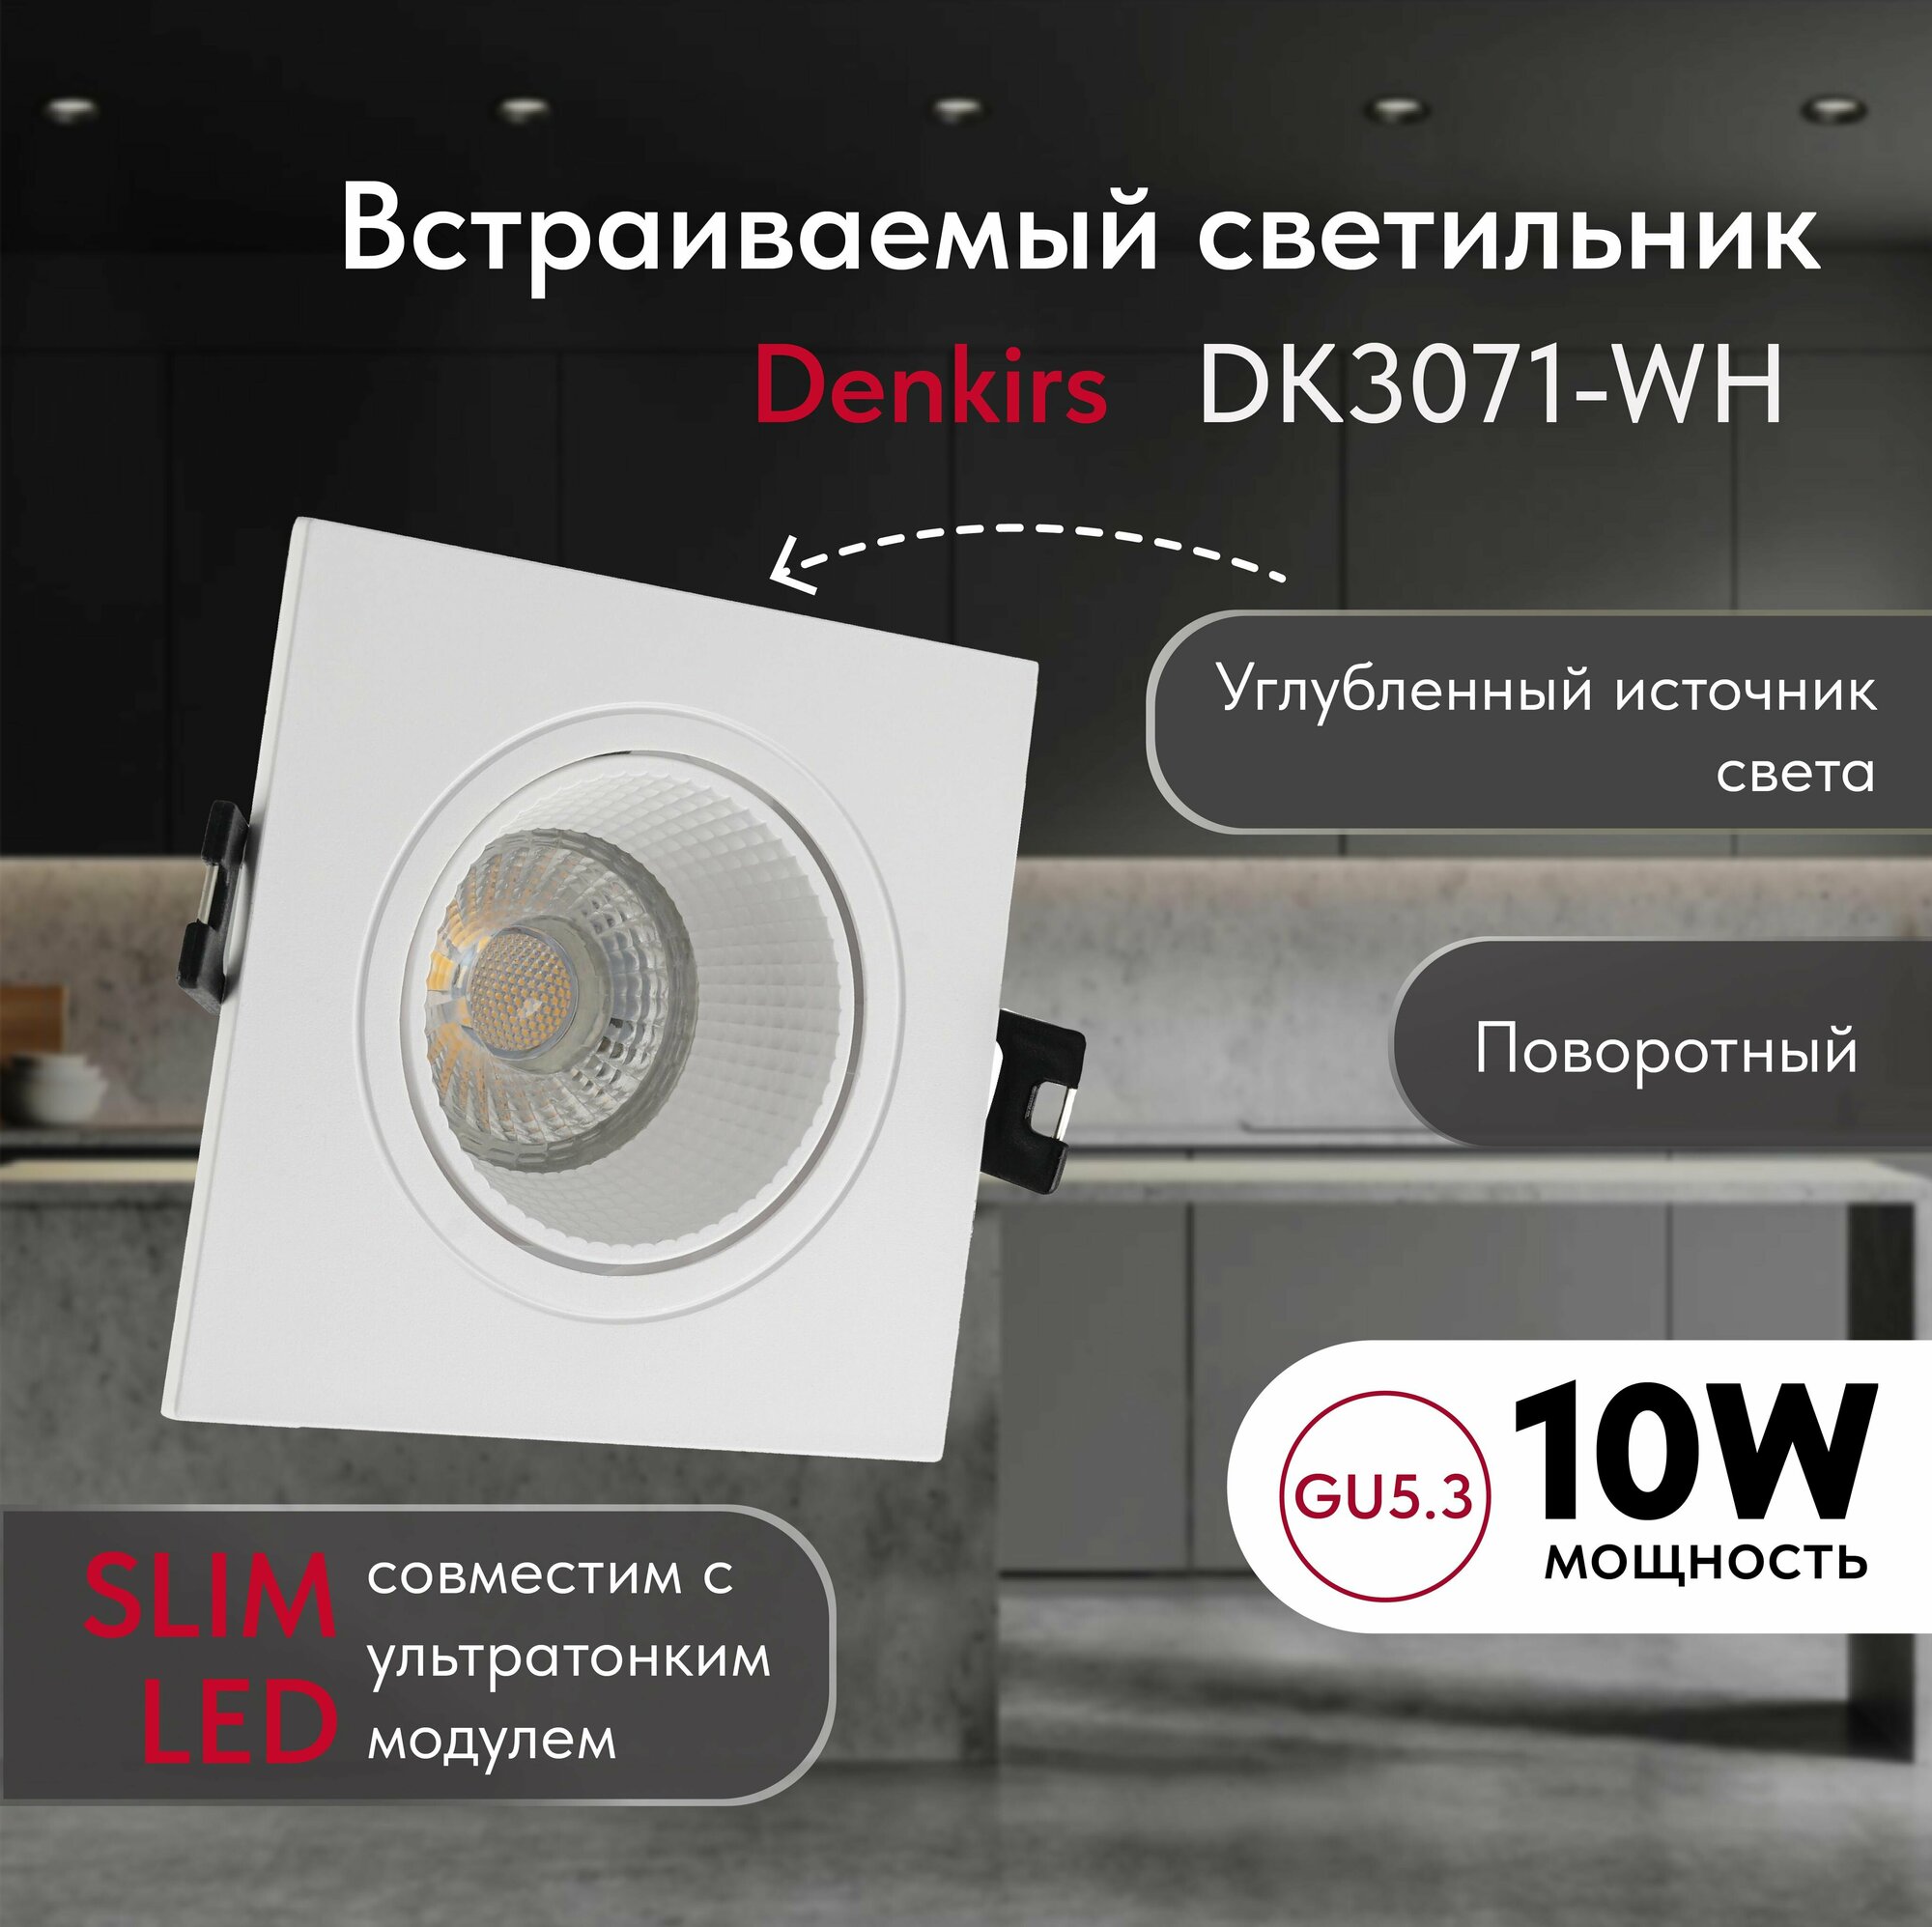 Светильник потолочный встраиваемый DENKIRS DK3071-WH, IP 20, 10 Вт, GU5.3, LED, белый/белый, пластик